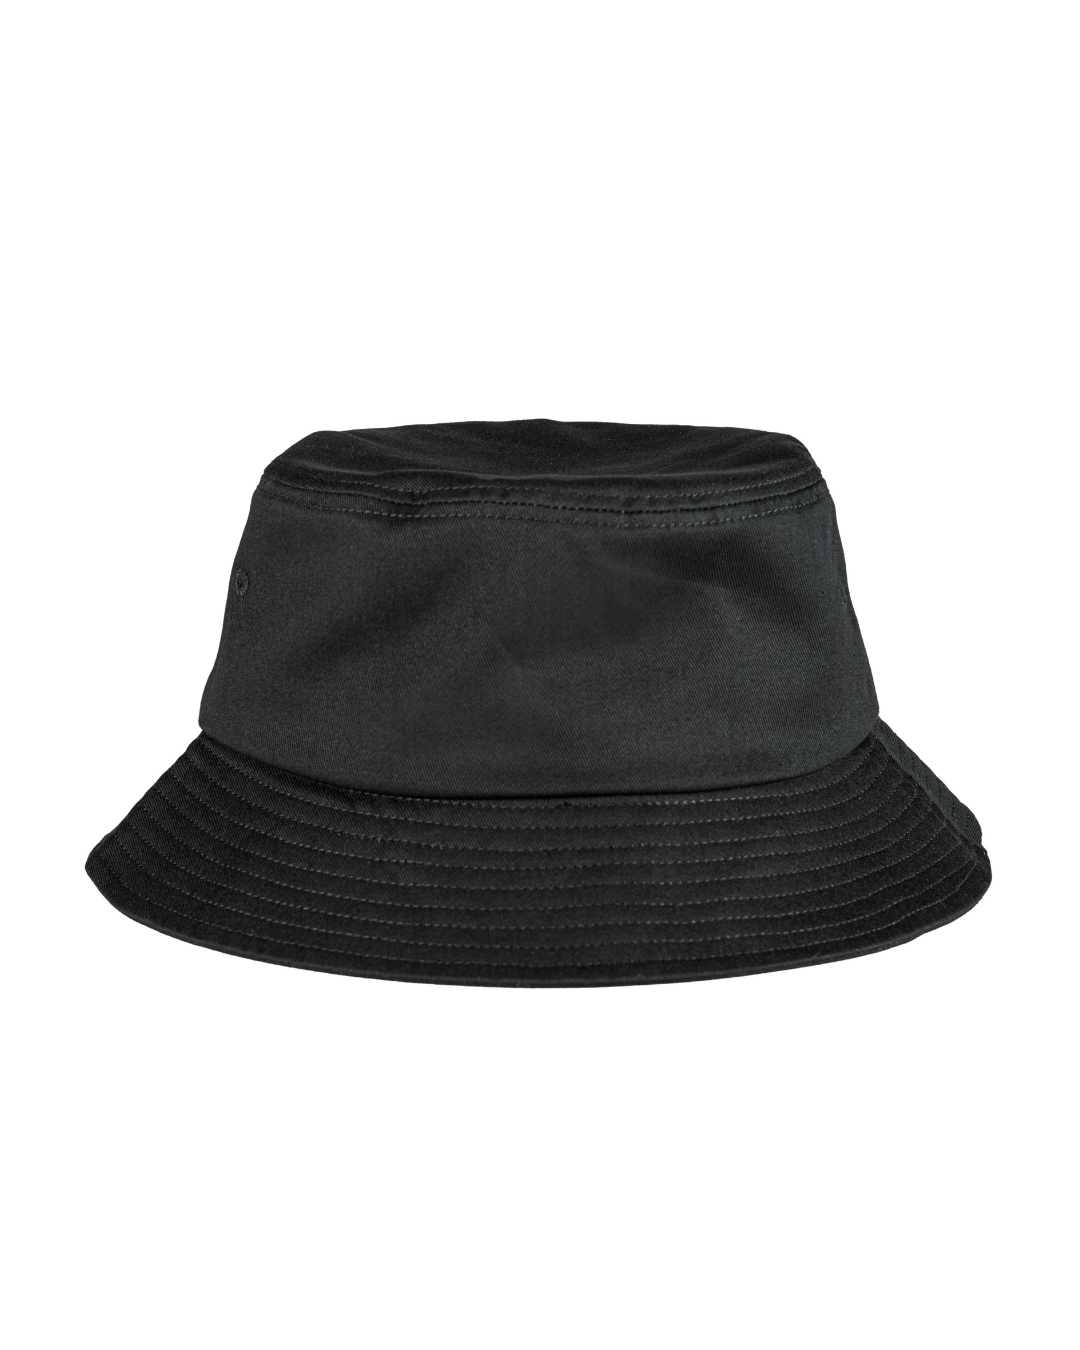 All Black Satin Lined Bucket Hat | KINApparel